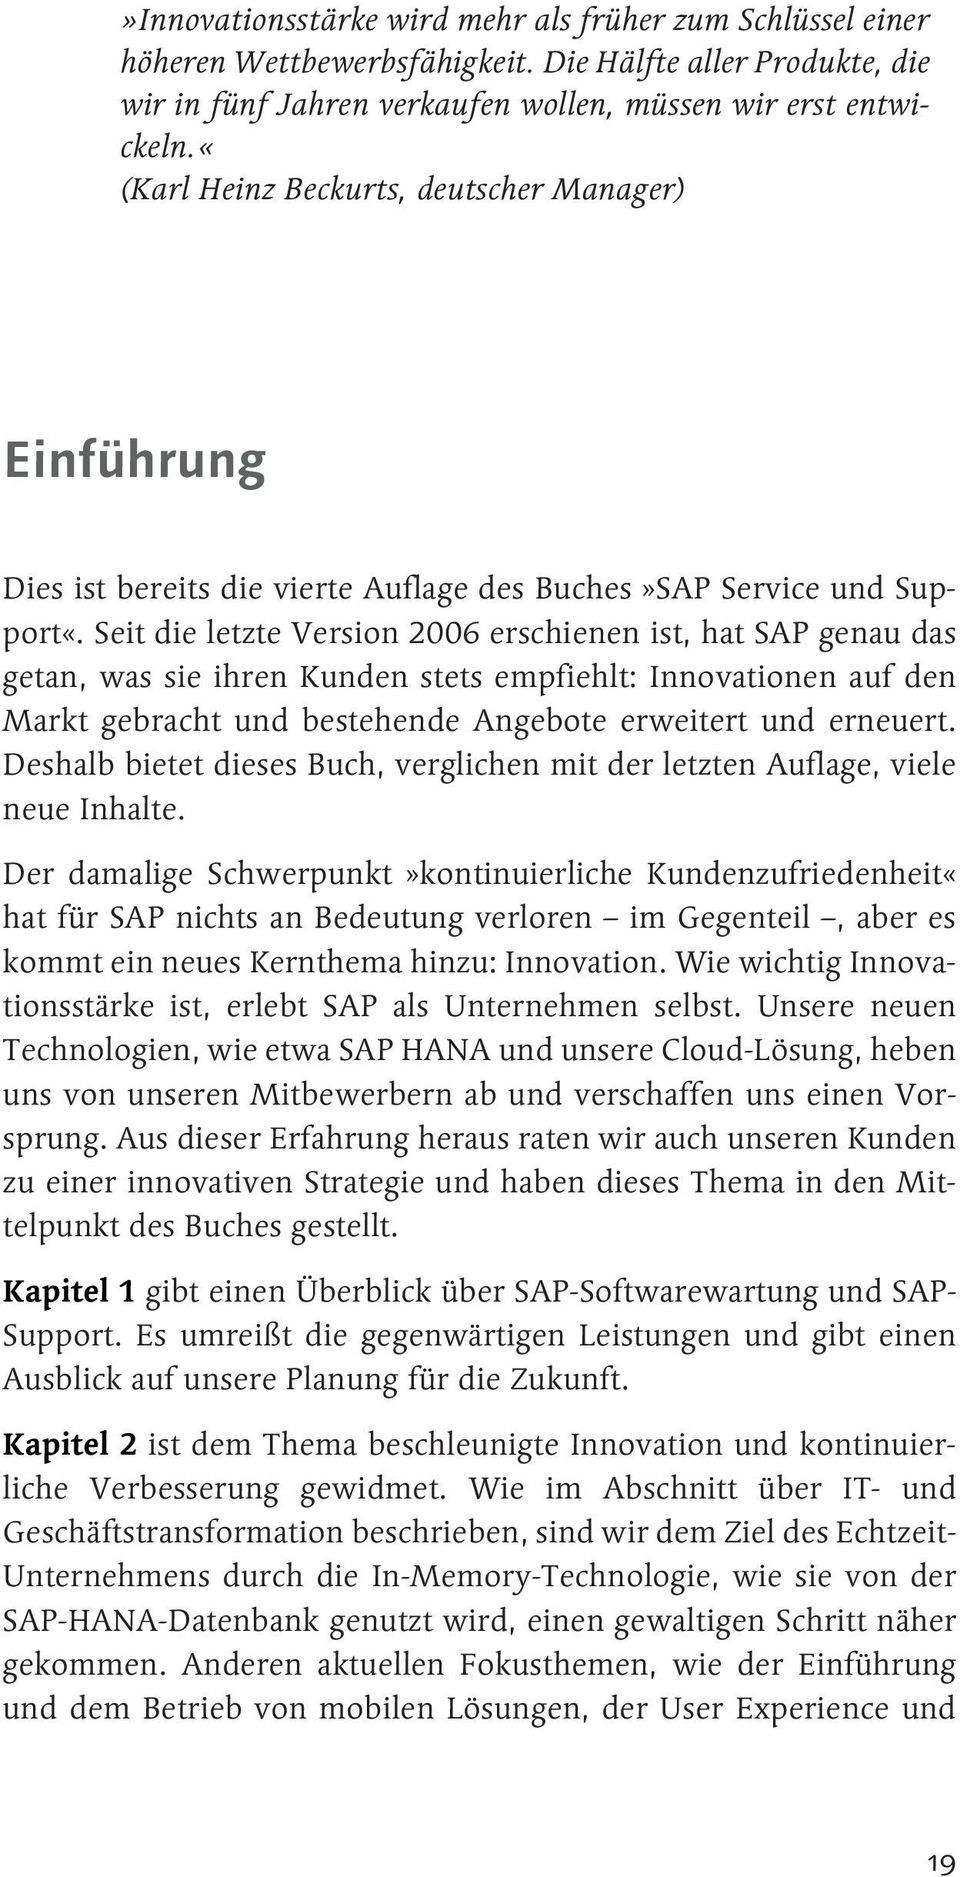 Seit die letzte Version 2006 erschienen ist, hat SAP genau das getan, was sie ihren Kunden stets empfiehlt: Innovationen auf den Markt gebracht und bestehende Angebote erweitert und erneuert.